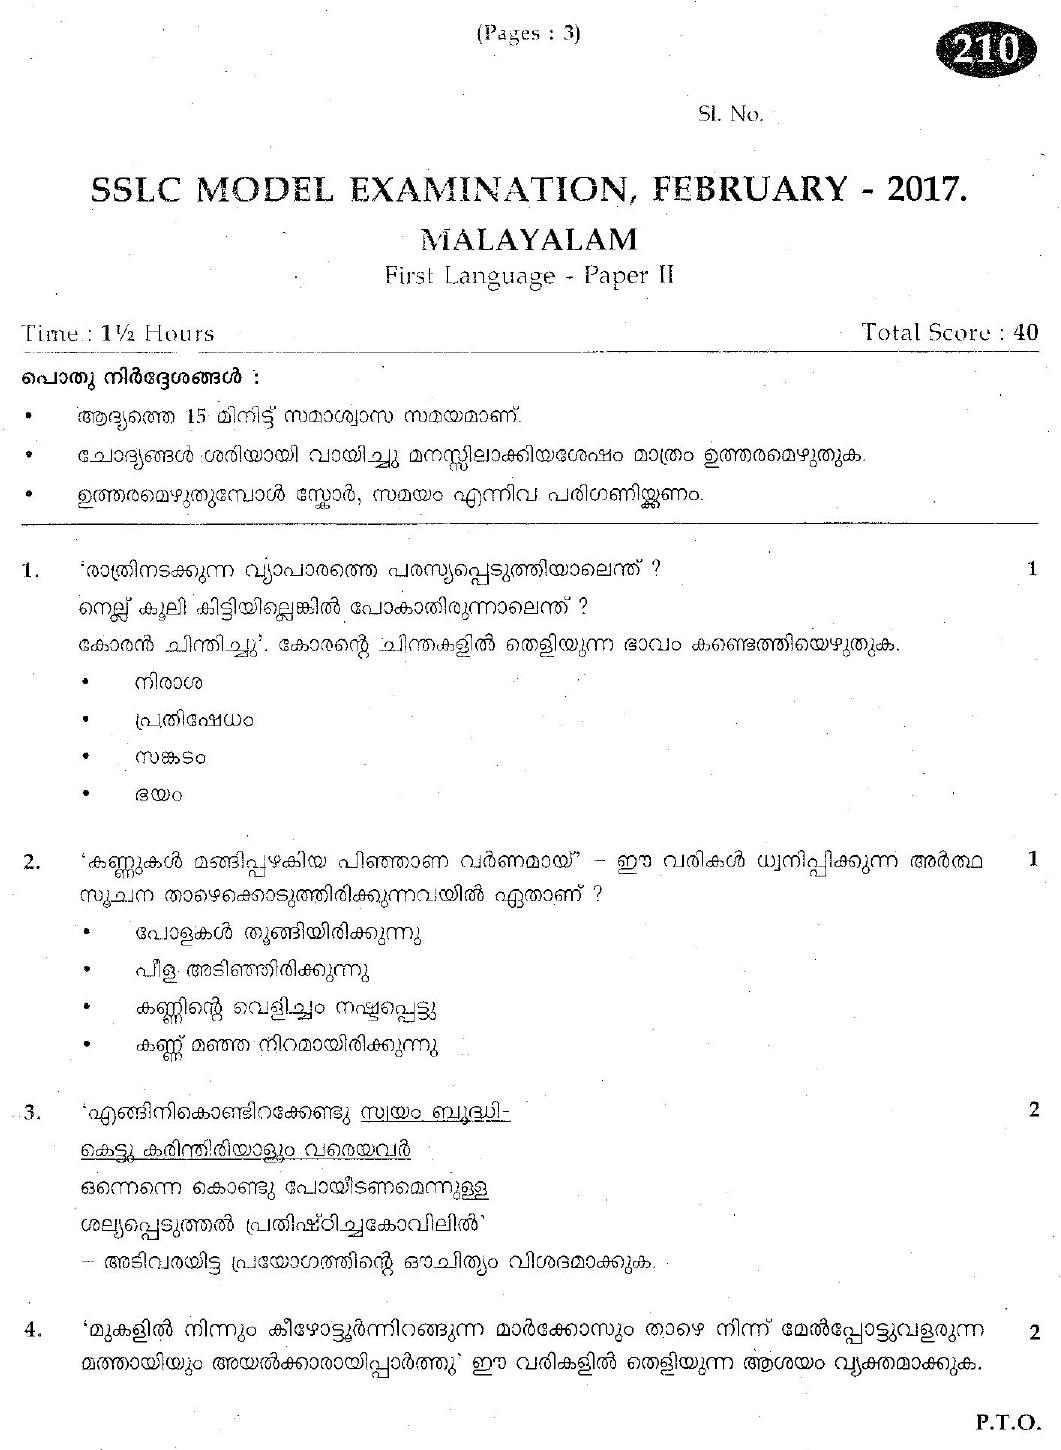 Kerala SSLC 2017 Malayalam II Question Paper.(Model) - Page 1